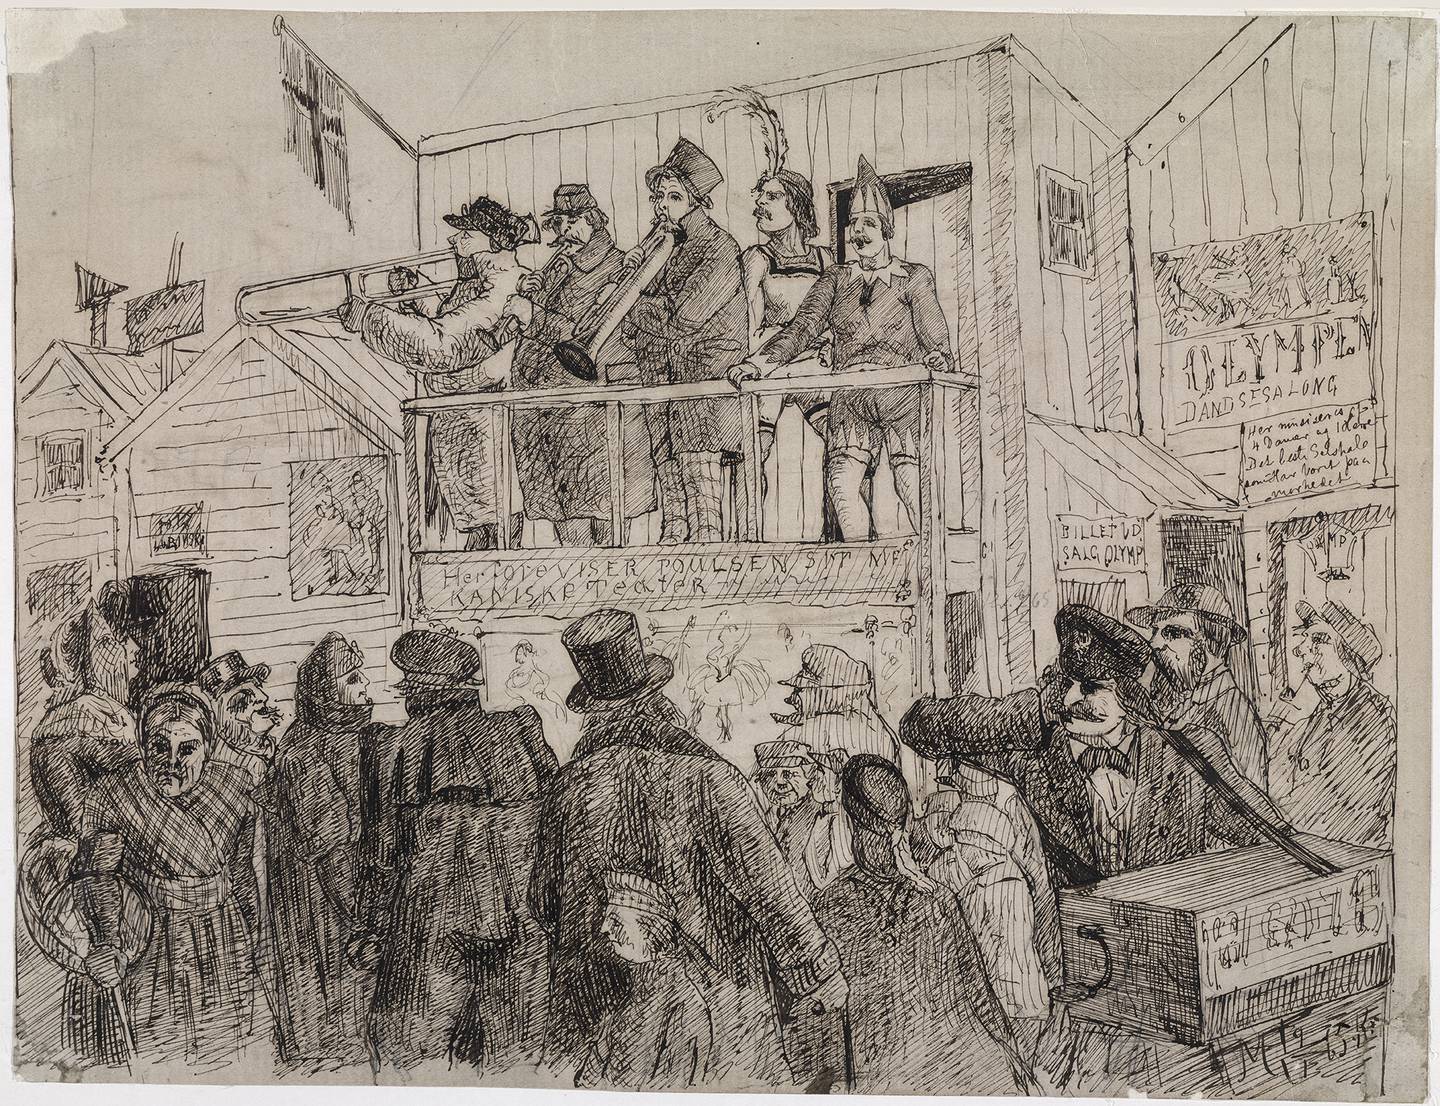 Markedsgjøglere på Youngstorget. På en balkong står tre menn og spiller trompet med to utkledde menn ved siden av. I forgrunnen mange mennesker og en lirekassemann holder seg for ørene til høyre. Ukjent kunstner.